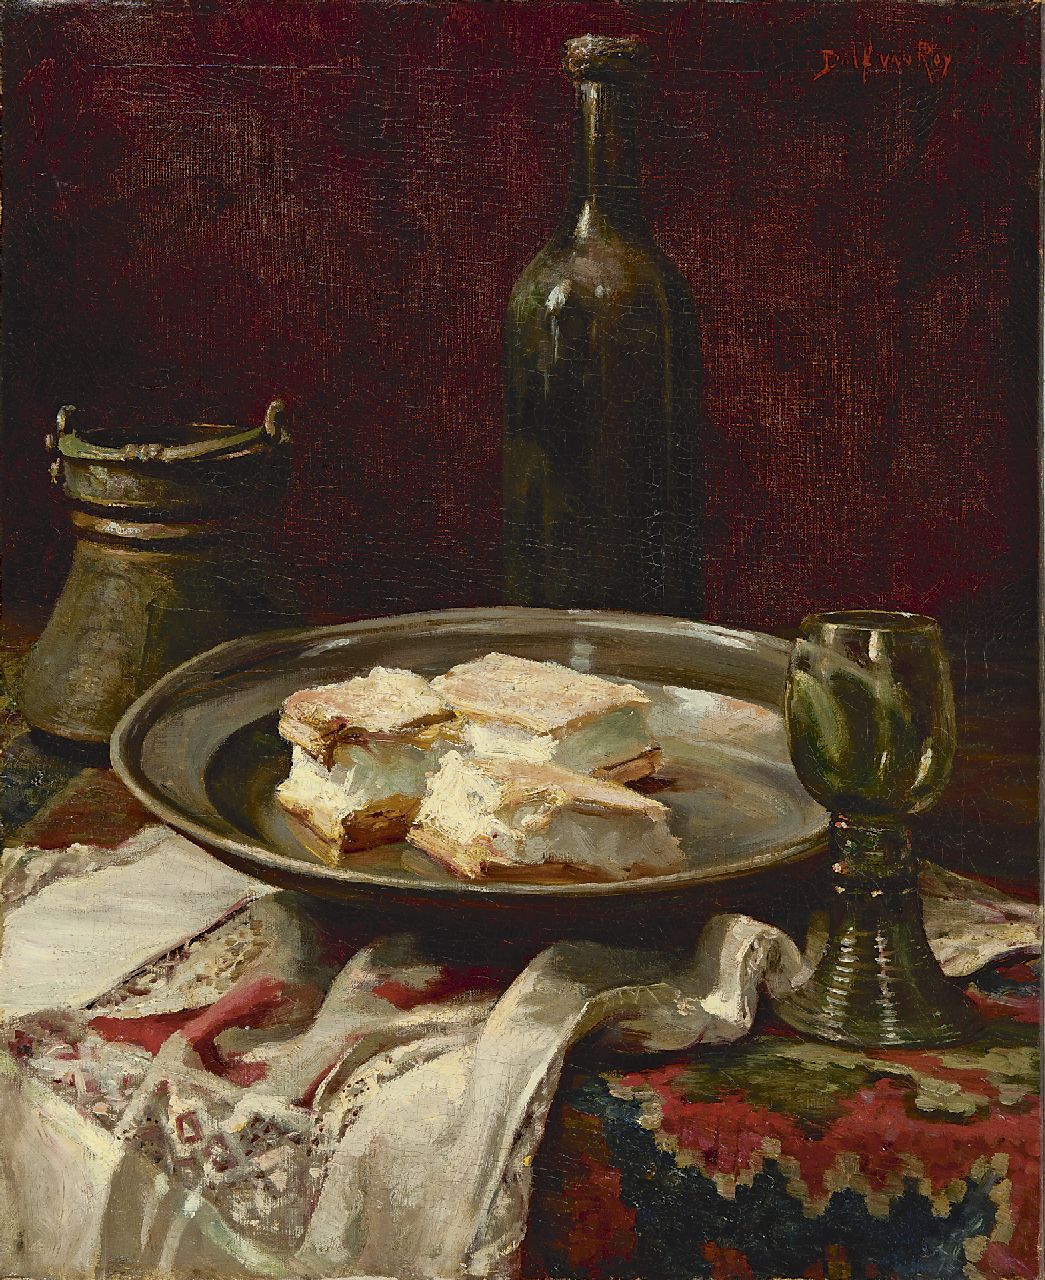 Roy D. van | Dolf van Roy, Het dessert, olieverf op doek 55,1 x 45,7 cm, gesigneerd rechtsboven